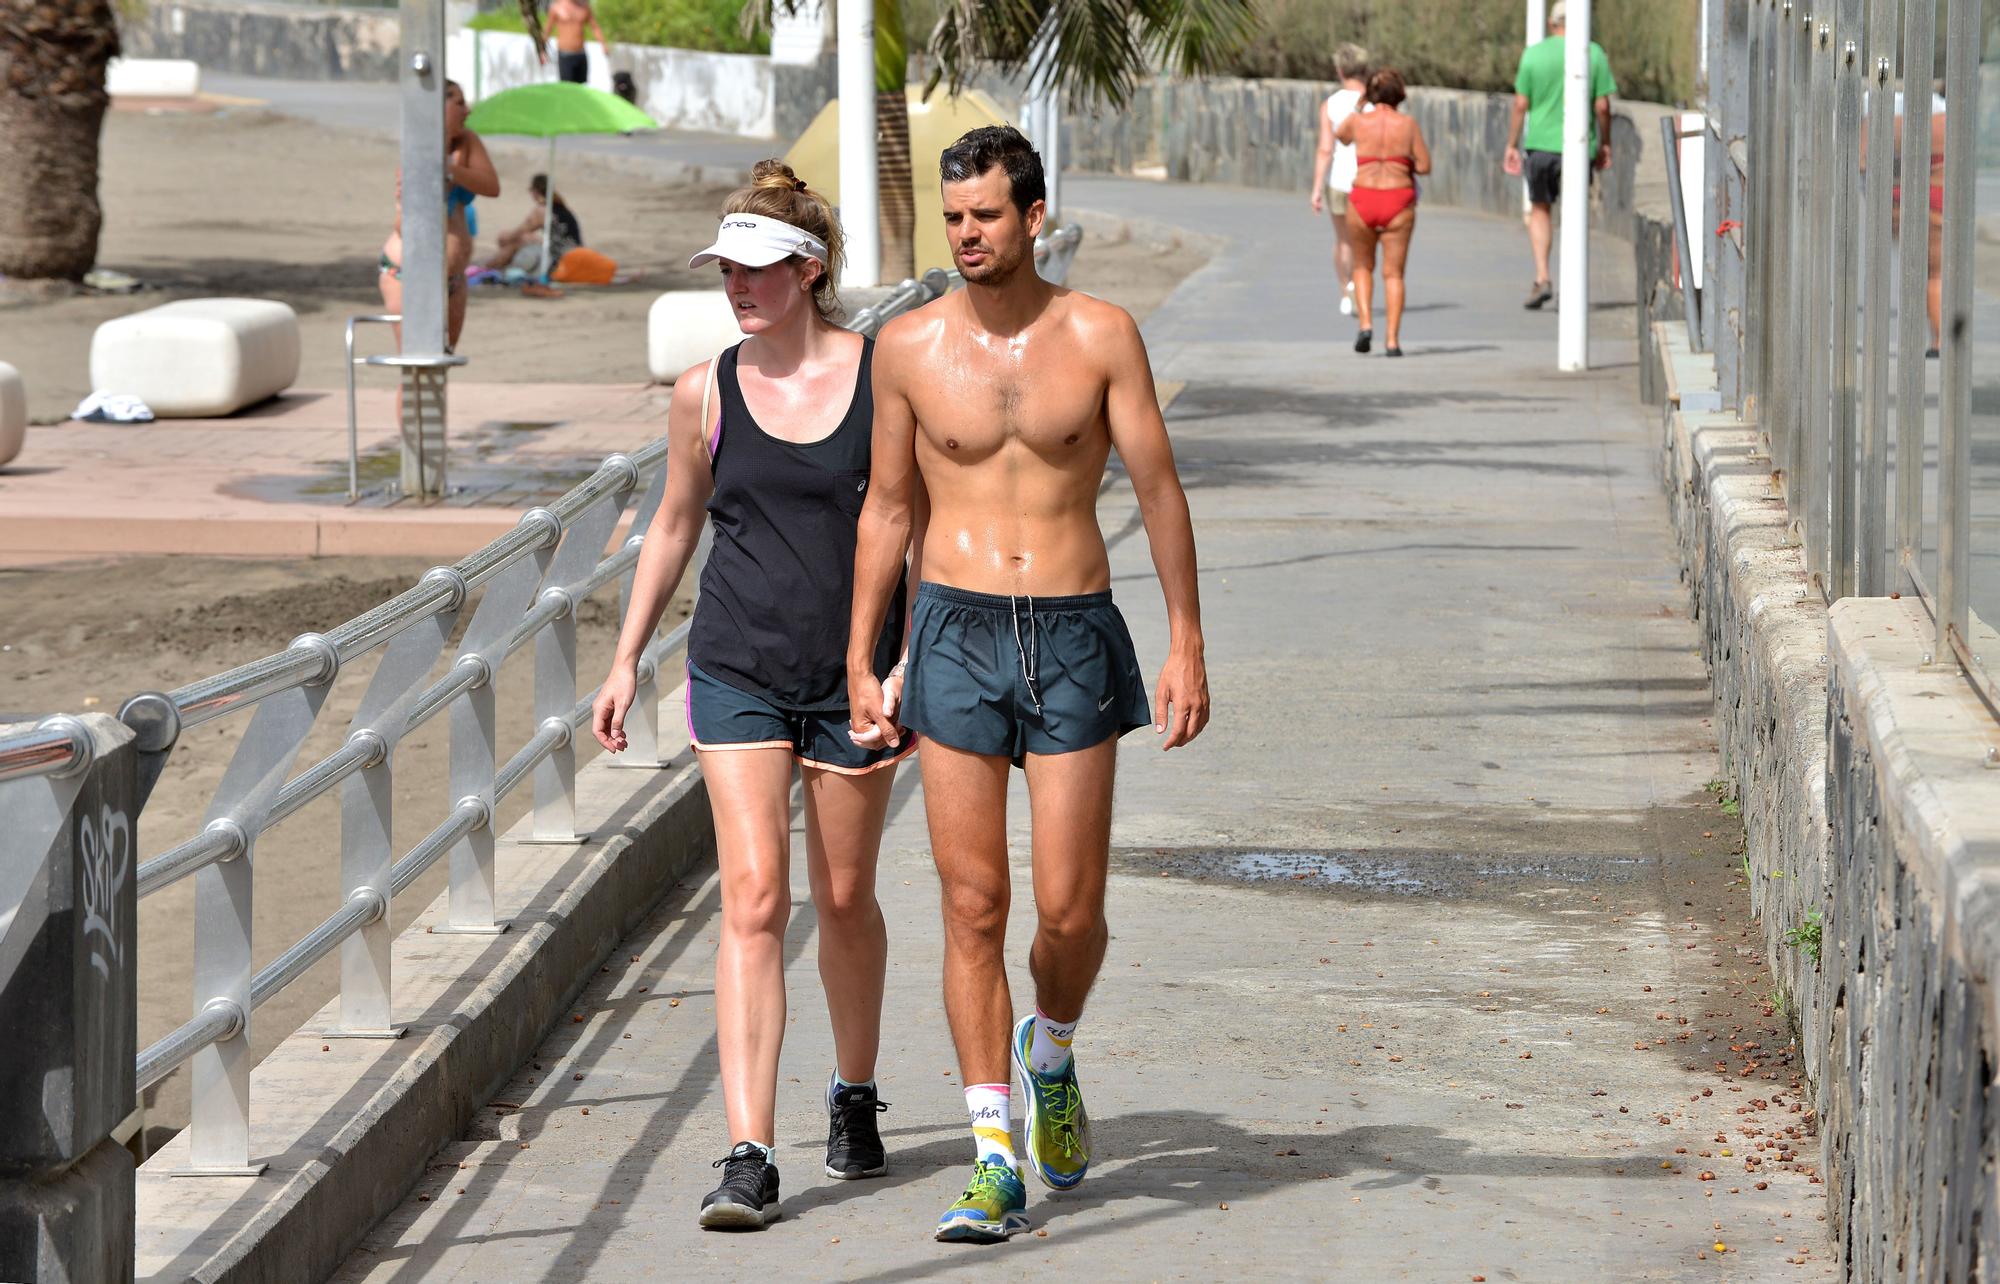 Imagen de archivo de dos turistas paseando por el tramo del paseo situado junto al hotel Don Gregory.